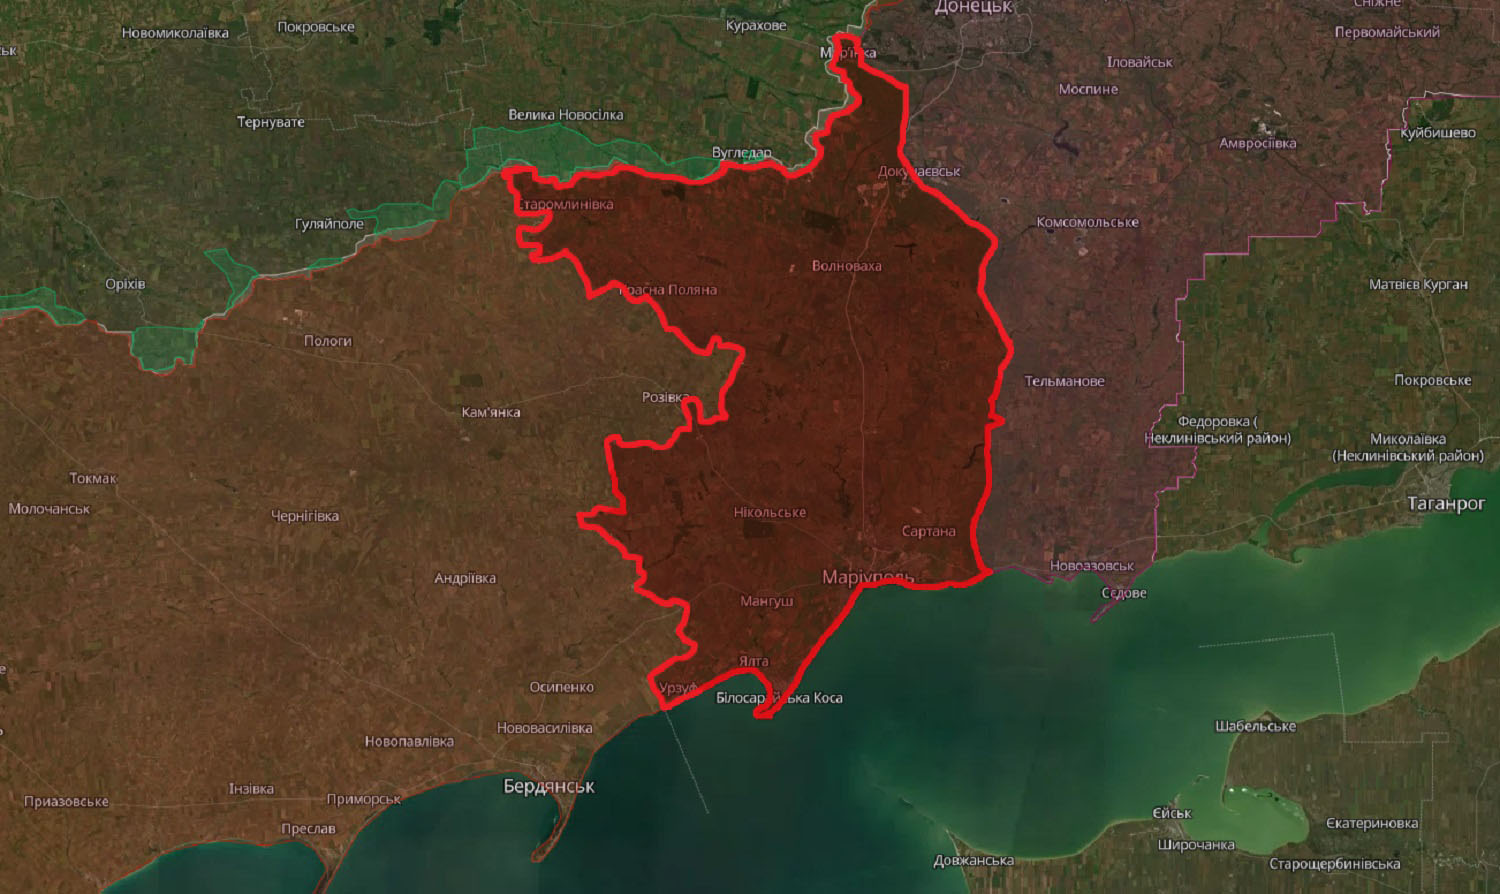 Територія у південній частині Донецької області, яку не вдалося повернути за 2 роки відкритого вторгнення